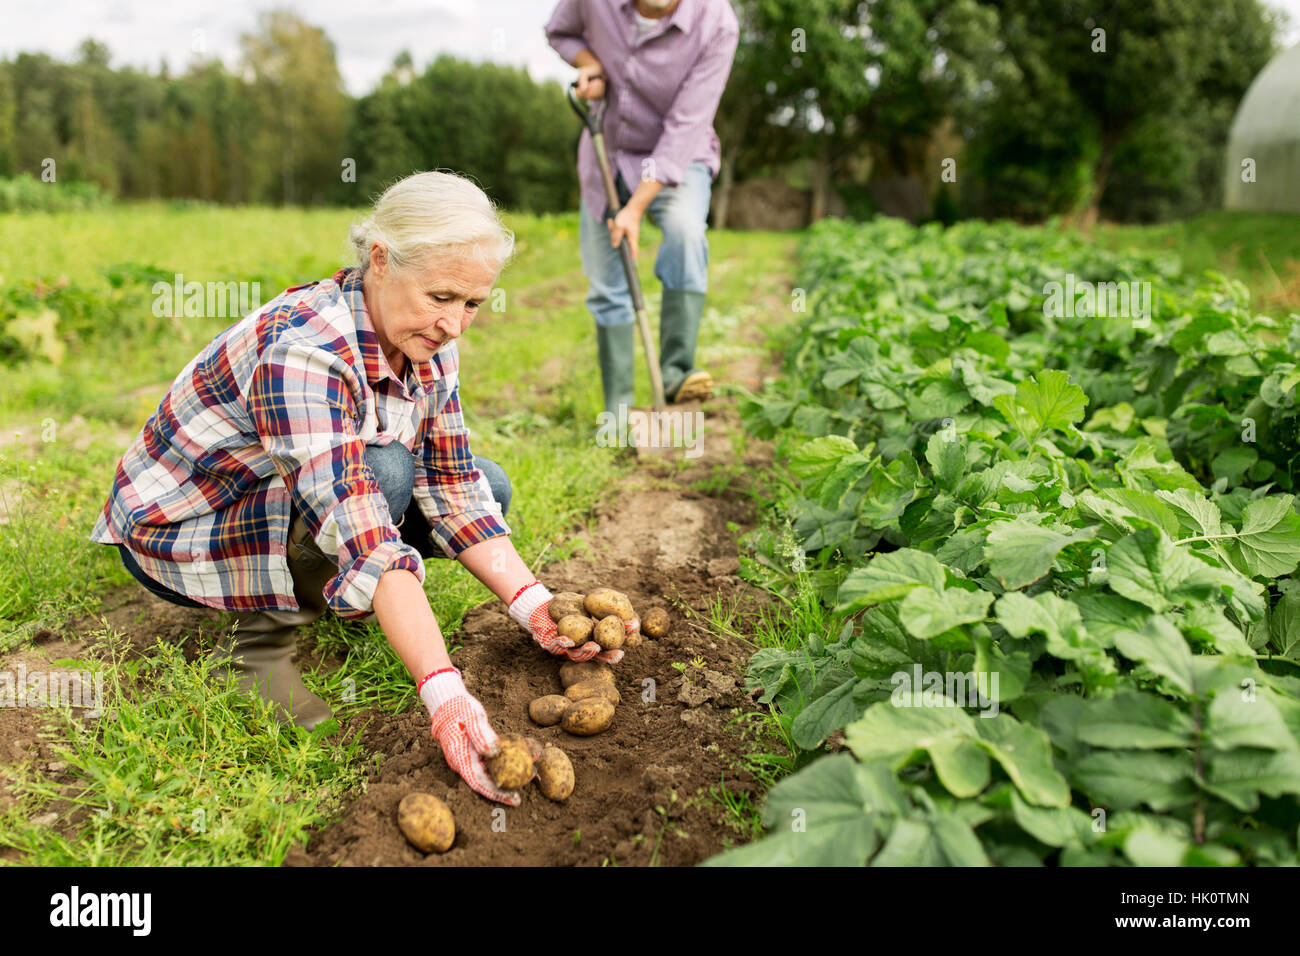 senior couple planting potatoes at garden or farm Stock Photo